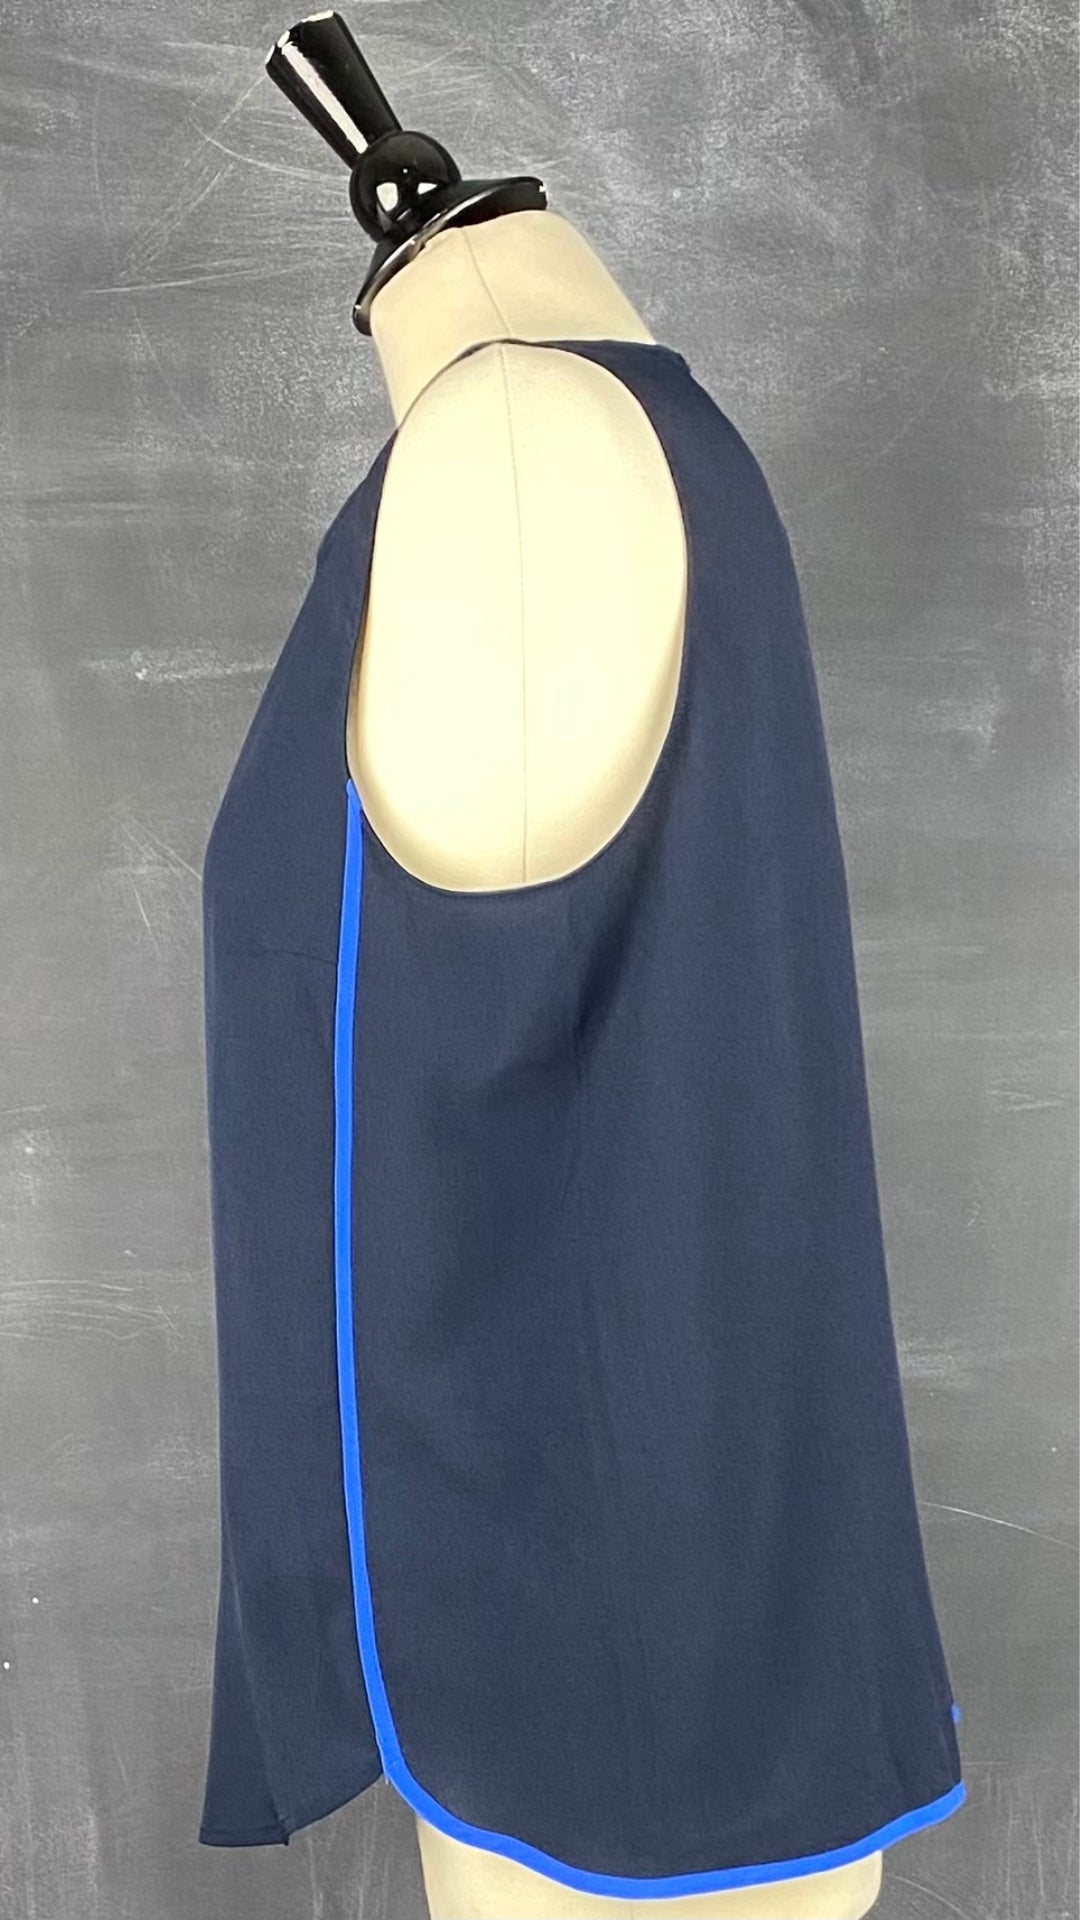 Camisole chic marine avec liséré de bleu azur, Banana Republic, taille medium. Vue de côté.